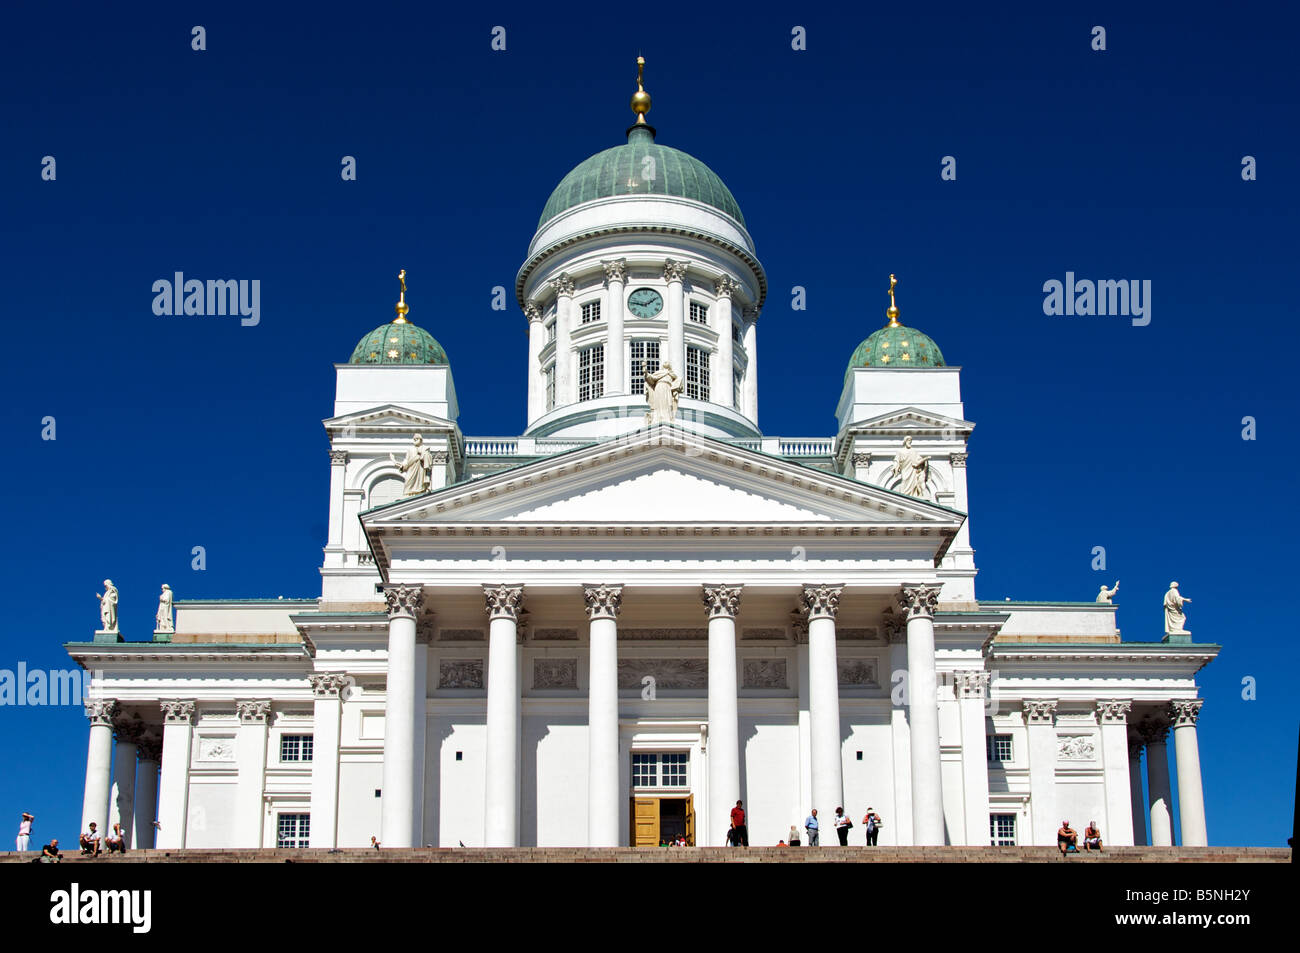 Evangelisch lutherische Helsinki Kathedrale Senatsplatz Helsinki Finnland Stockfoto